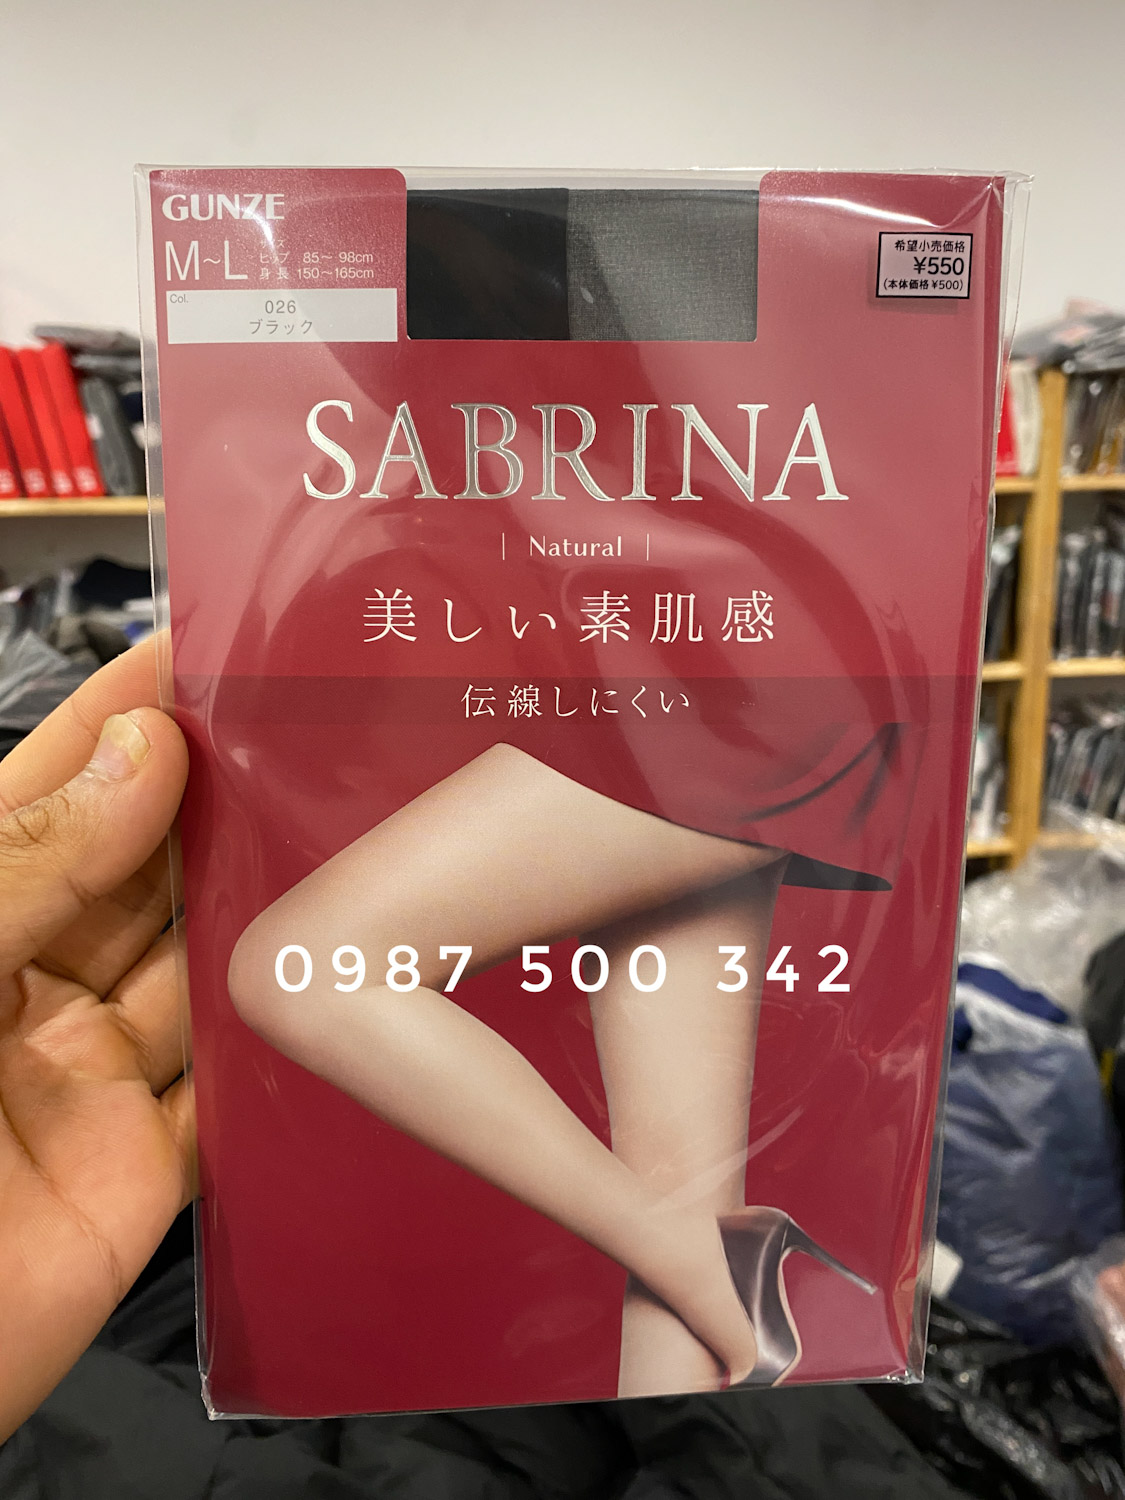 Quần tất da Sabrina Gunze Natural Nhật Bản màu đen